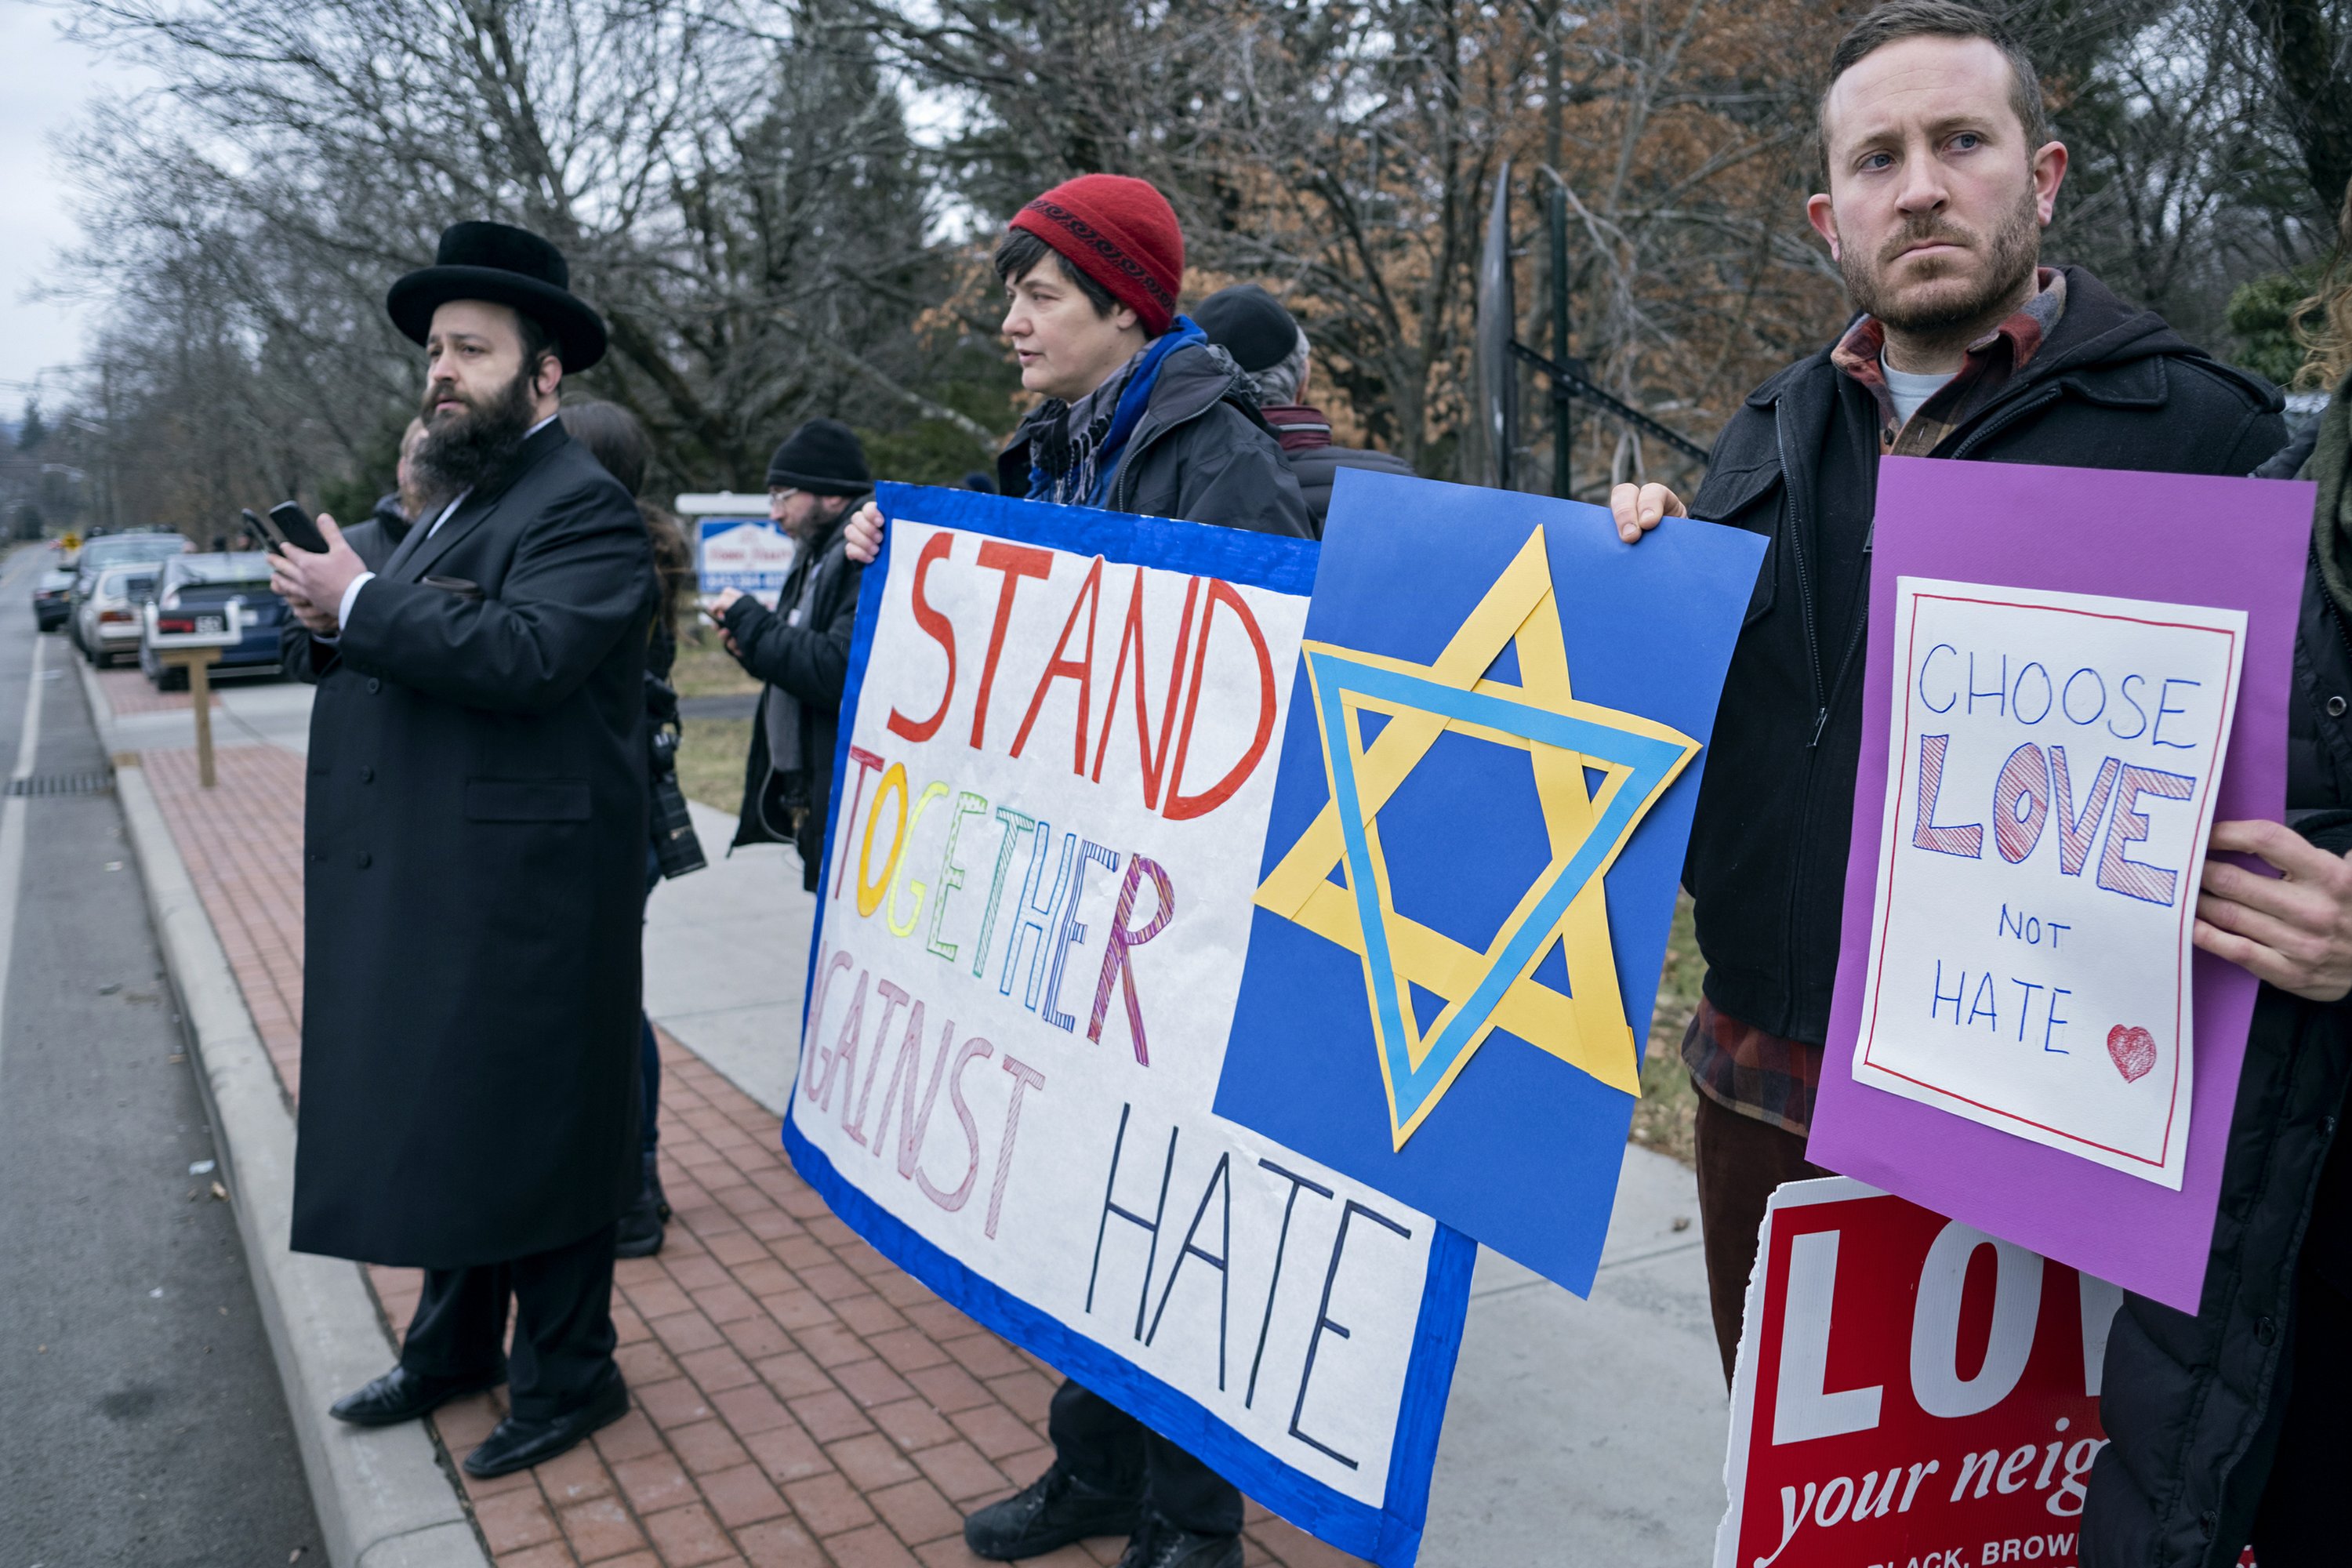 原创在美国引发恐慌的反犹暴力行为正在激增犹太人领袖予以严厉谴责